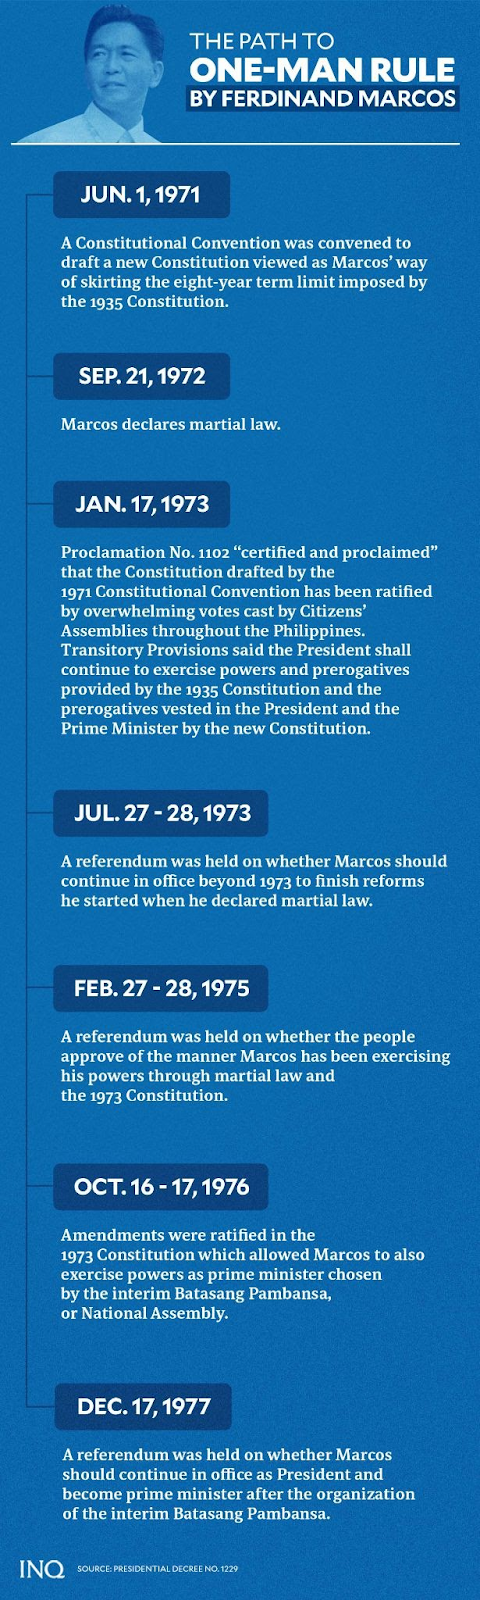 one-man rule by Ferdinand Marcos